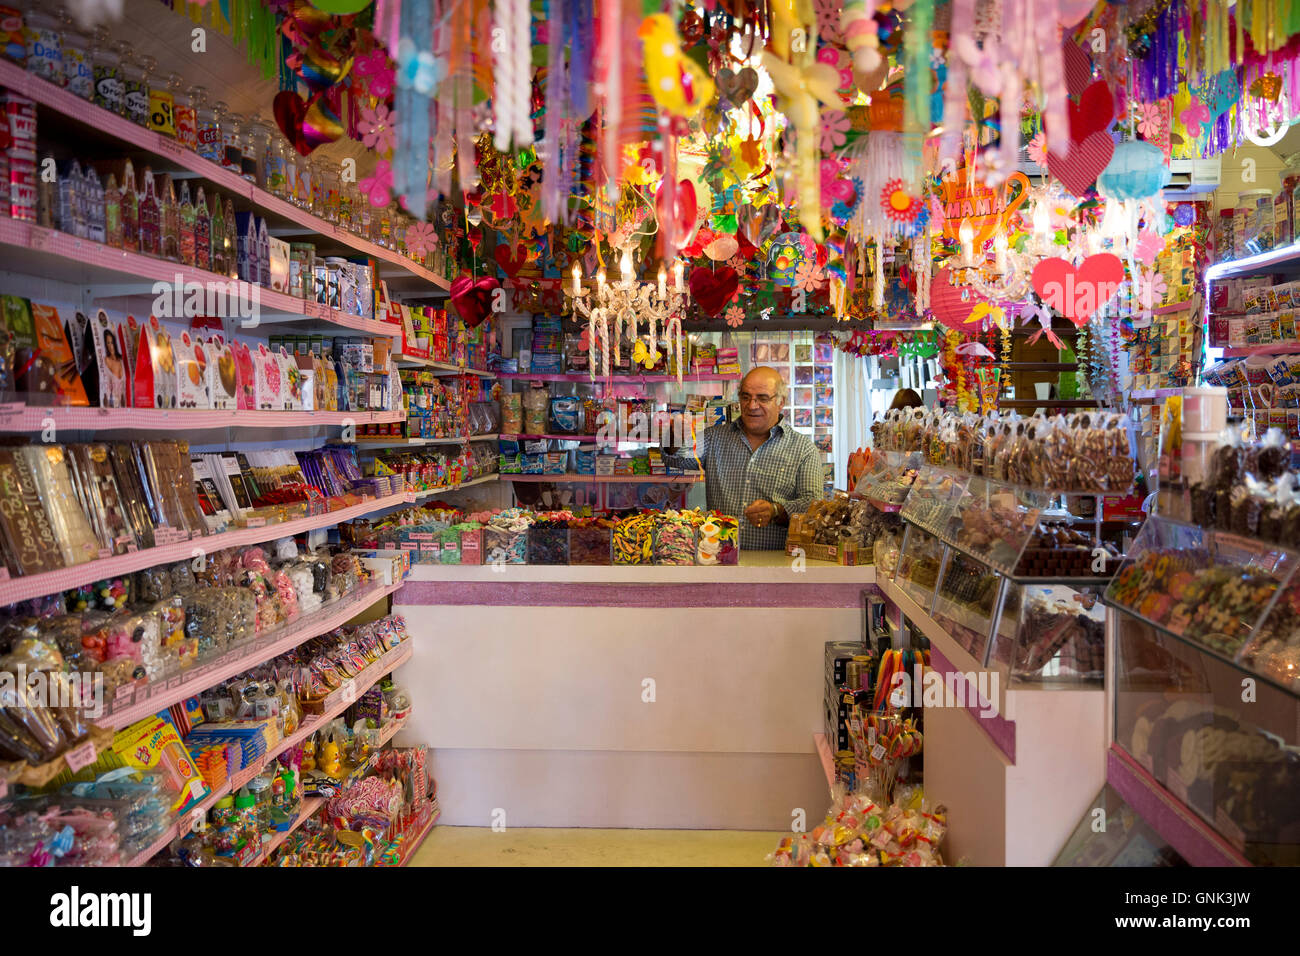 Boutique de Chocolaterie confiserie Confiseries et magasin de cadeaux, Snoepwinkeltje, Edam, Pays-Bas Banque D'Images